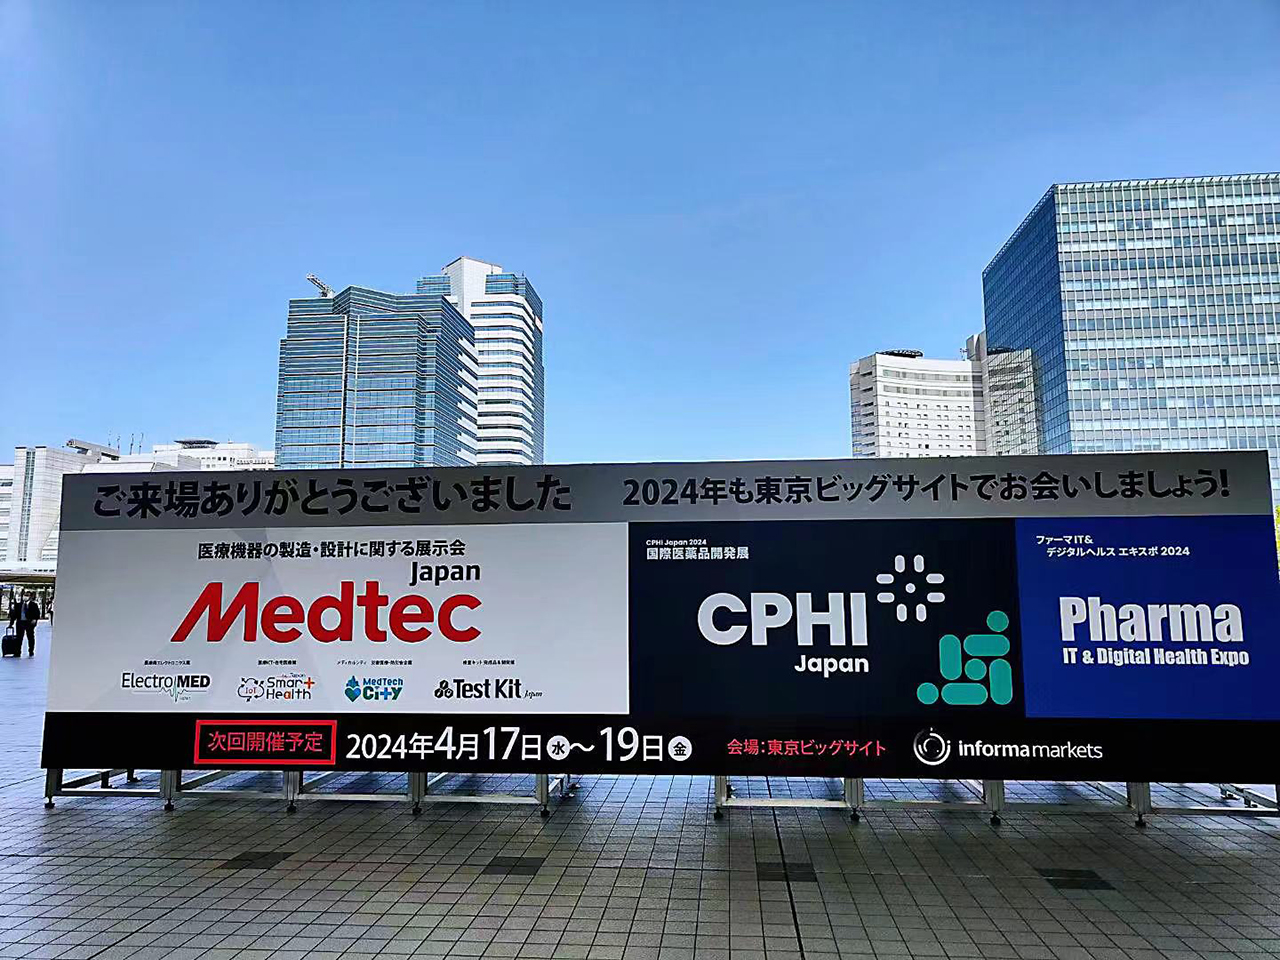 CPHI JAPAN 2023 (Abr.17-Abr.19, 2023)